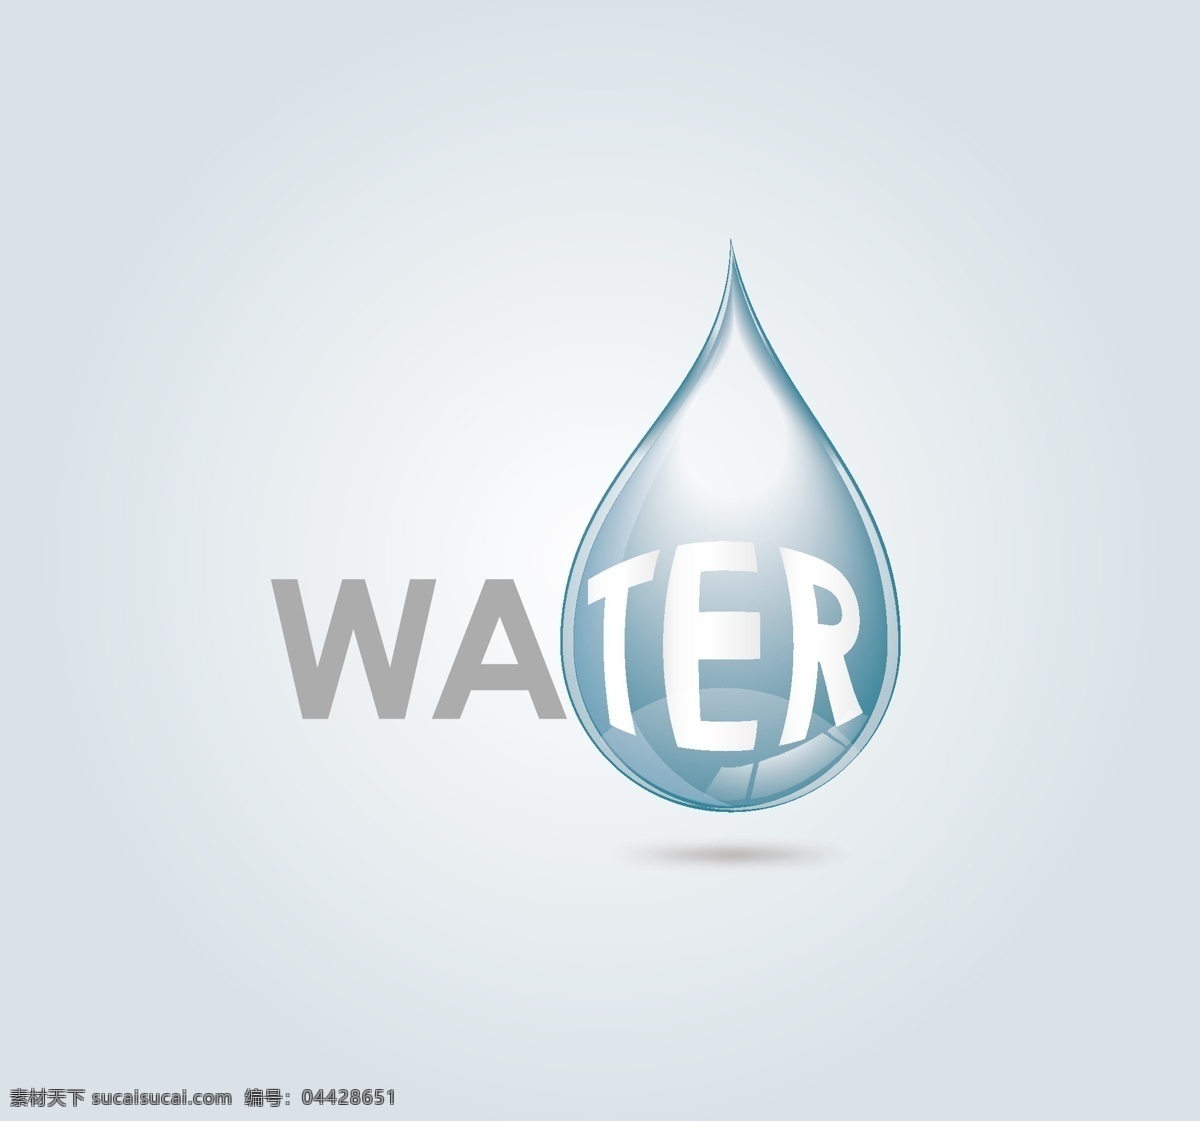 水滴 图形 矢量图 water 环保 蓝色 透明 水滴状 其他矢量图